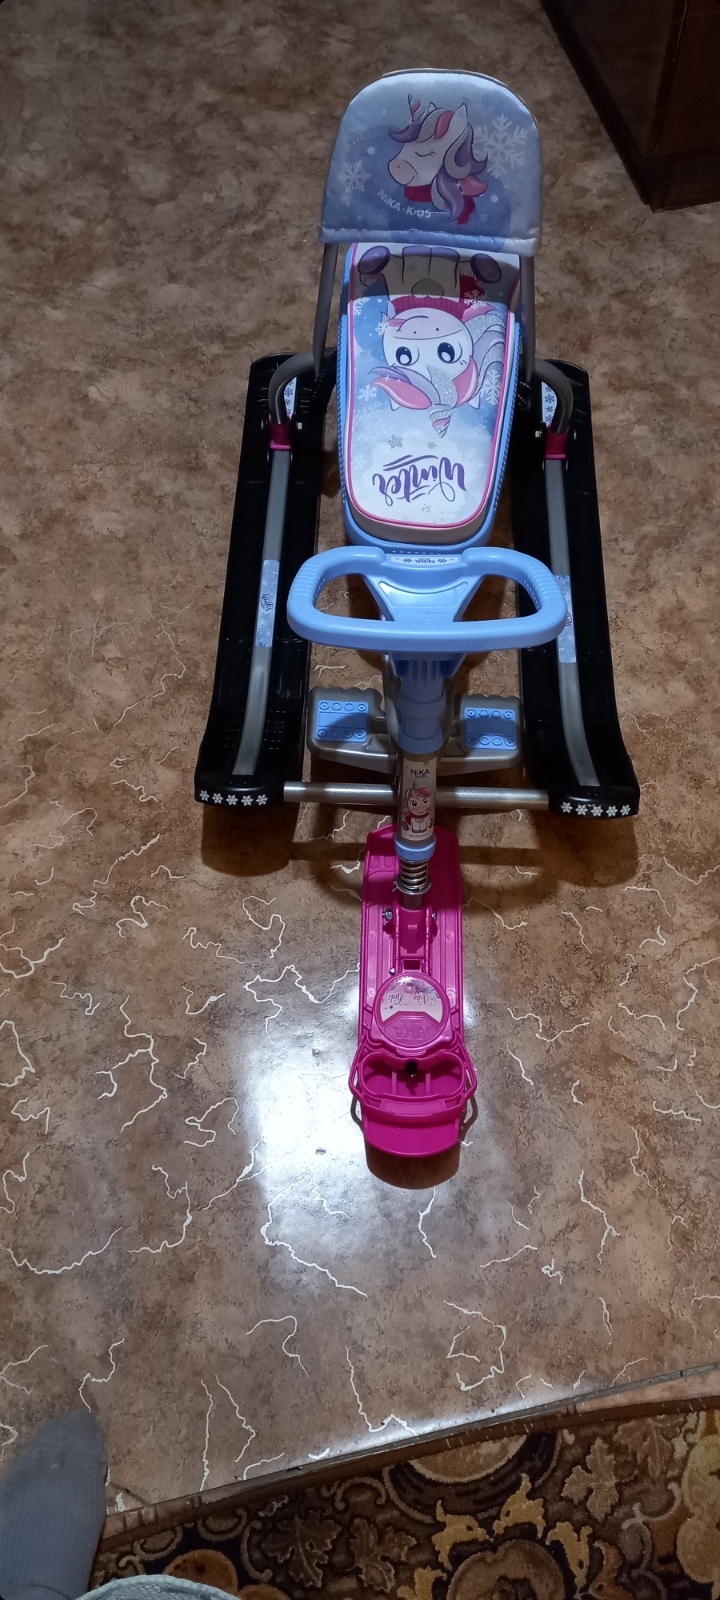 Фотография покупателя товара Снегокат «Тимка спорт 4-1 Единорог», ТС4-1М/ЕР, со спинкой и ремнём безопасности, цвет розовый/серый/сиреневый